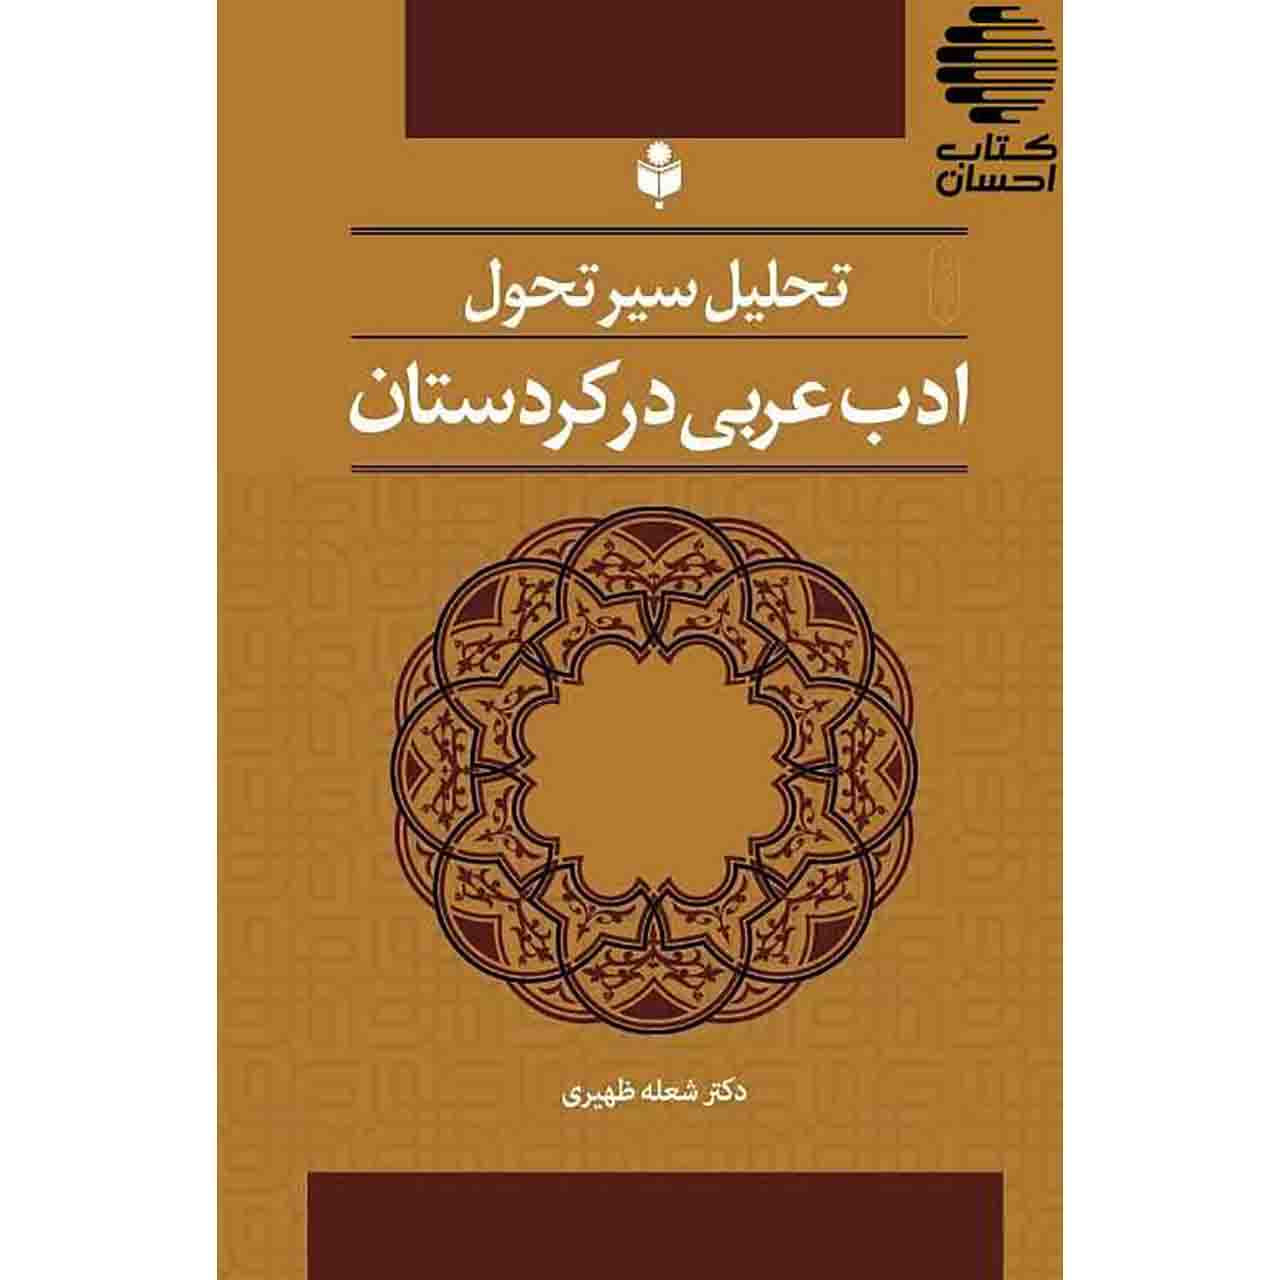 تحلیل سیر تحول ادب عربی در کردستان